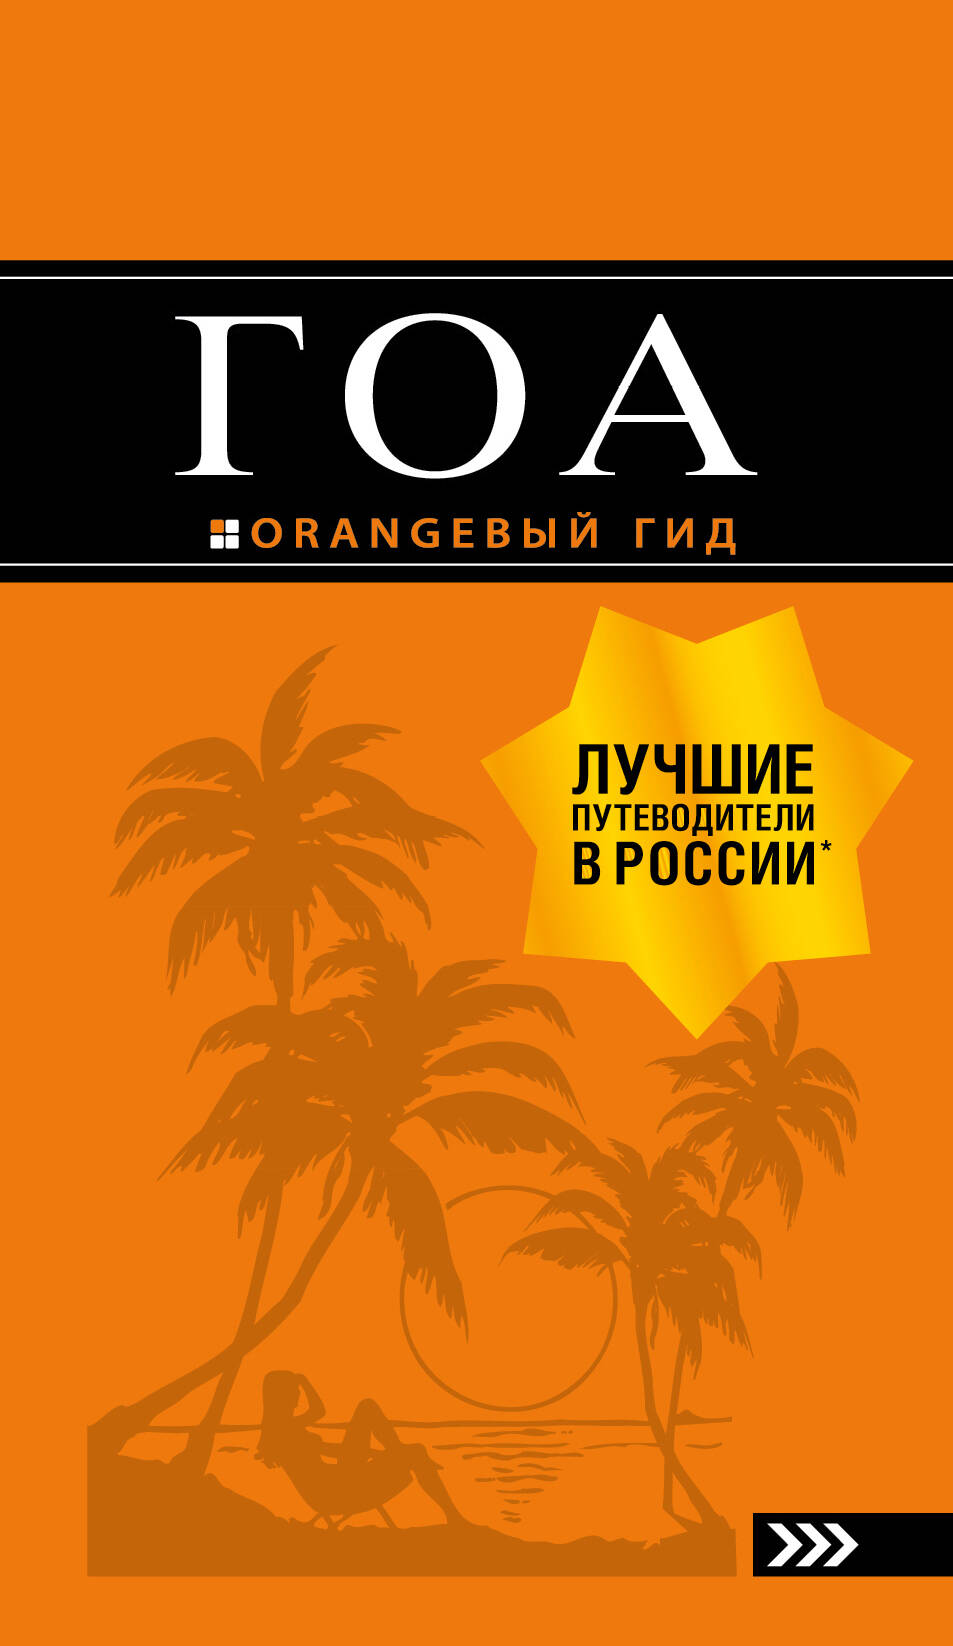 Гоа (3 изд.) (мОранжГид) Давыдов давыдов андрей гоа